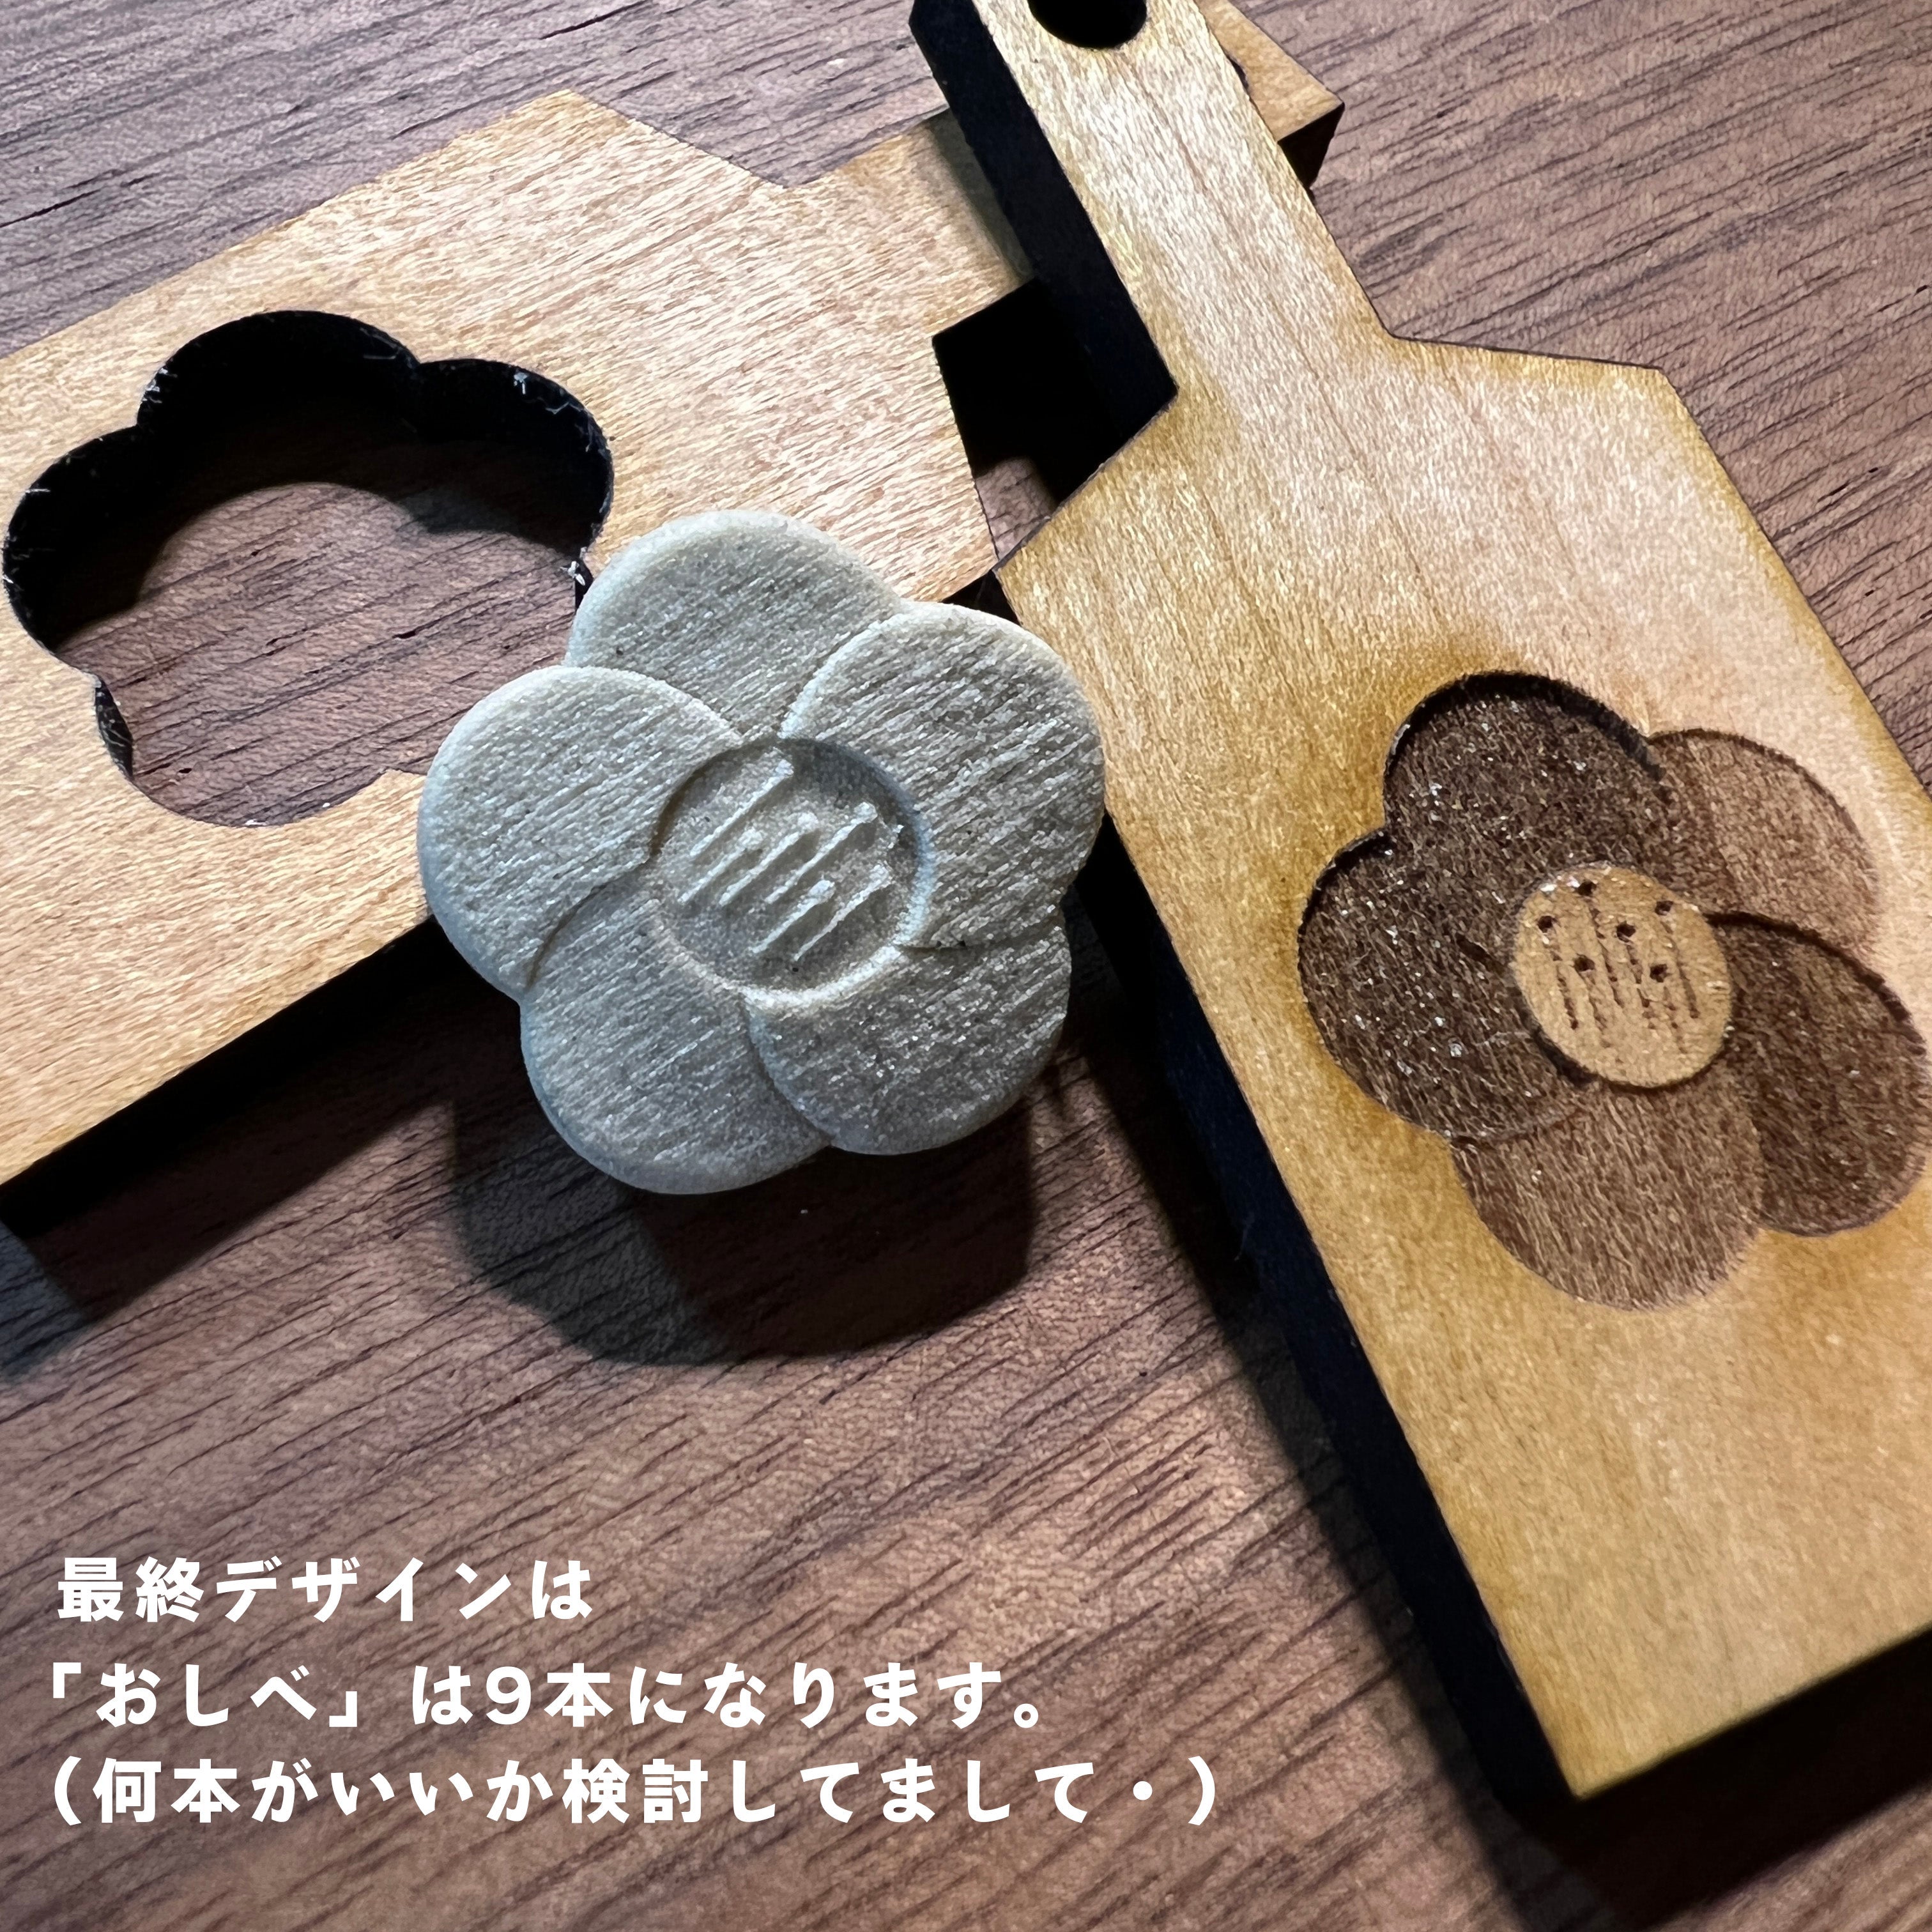 Wooden Keychain 04 [bokeh]